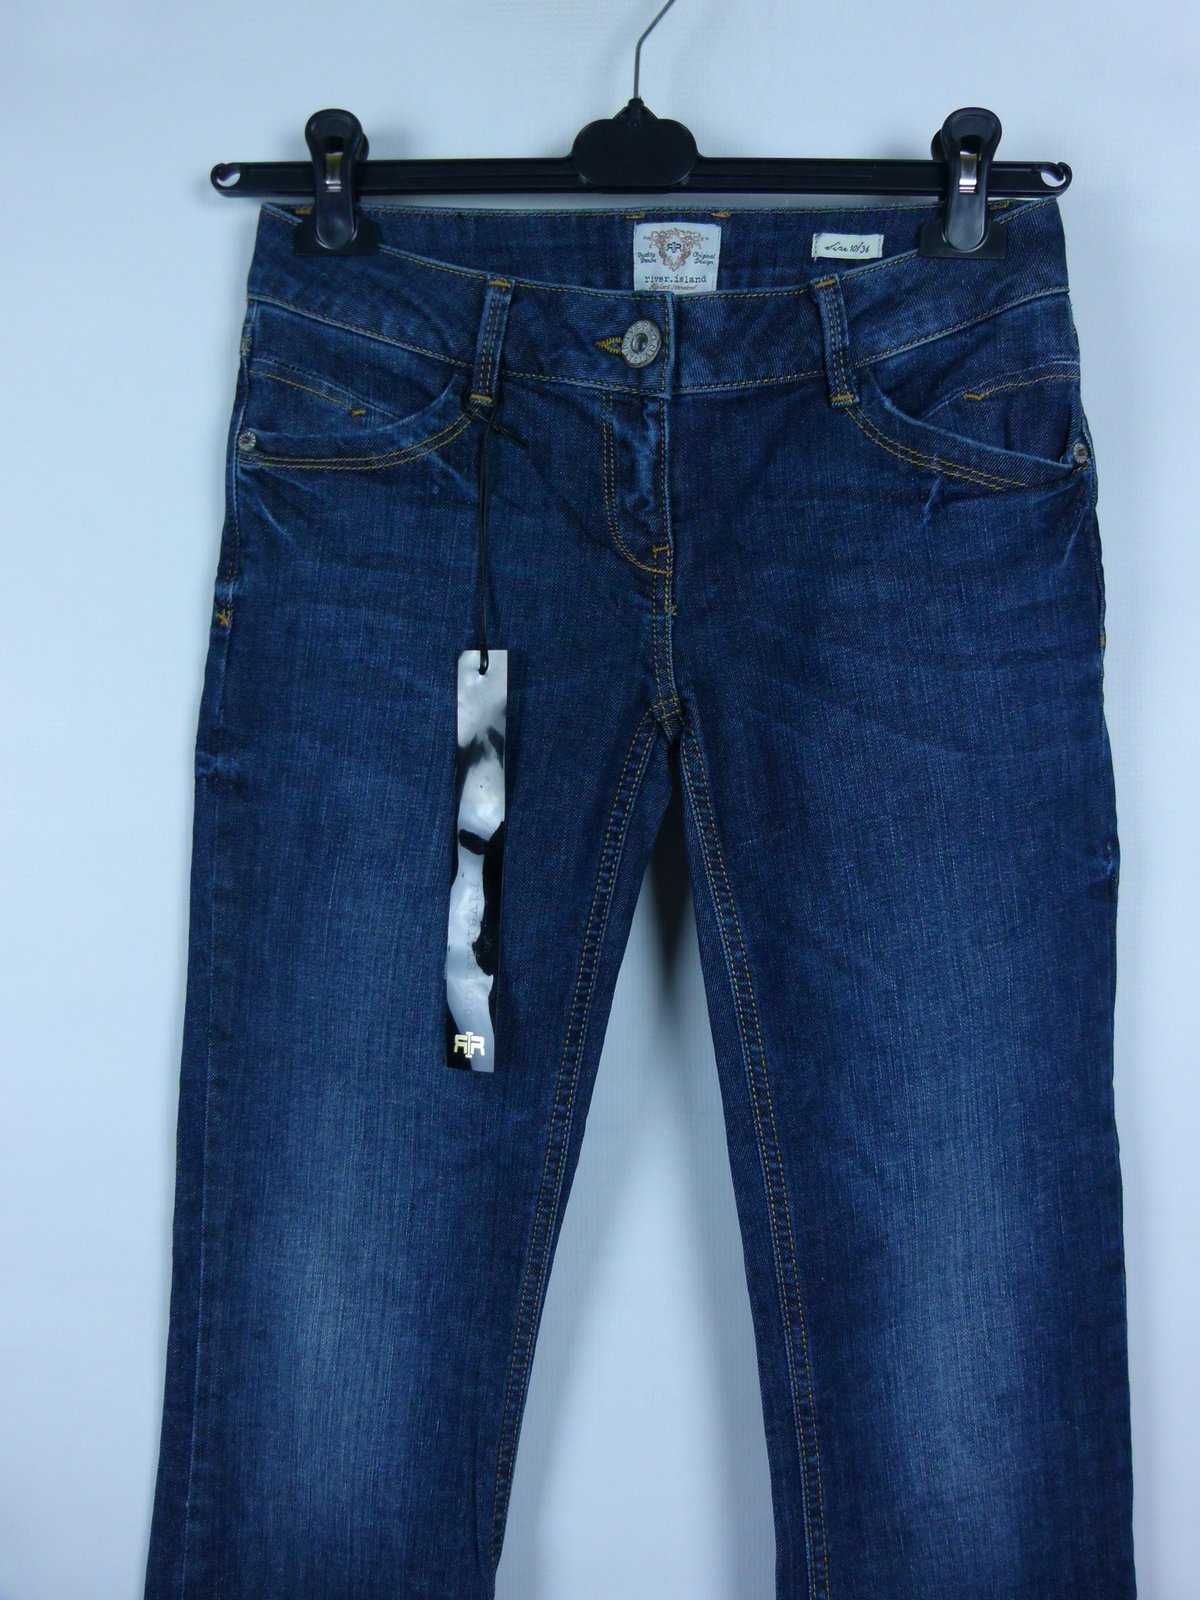 River Island spodnie dżins niski stan bootcut - 10S / 36S z metką